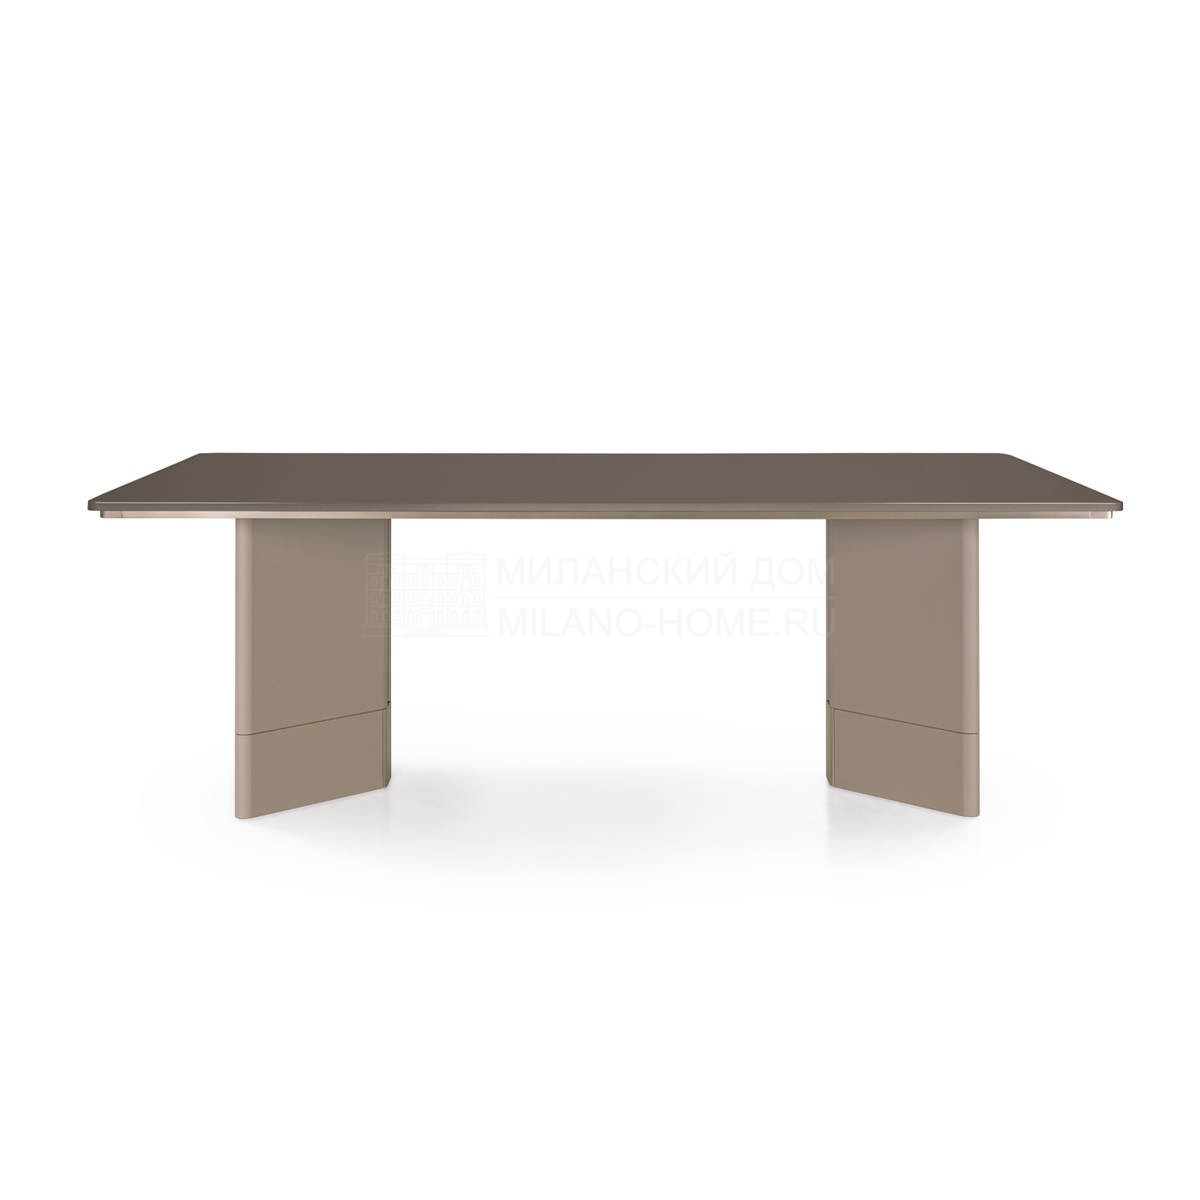 Обеденный стол Zero rectangular table из Италии фабрики TURRI